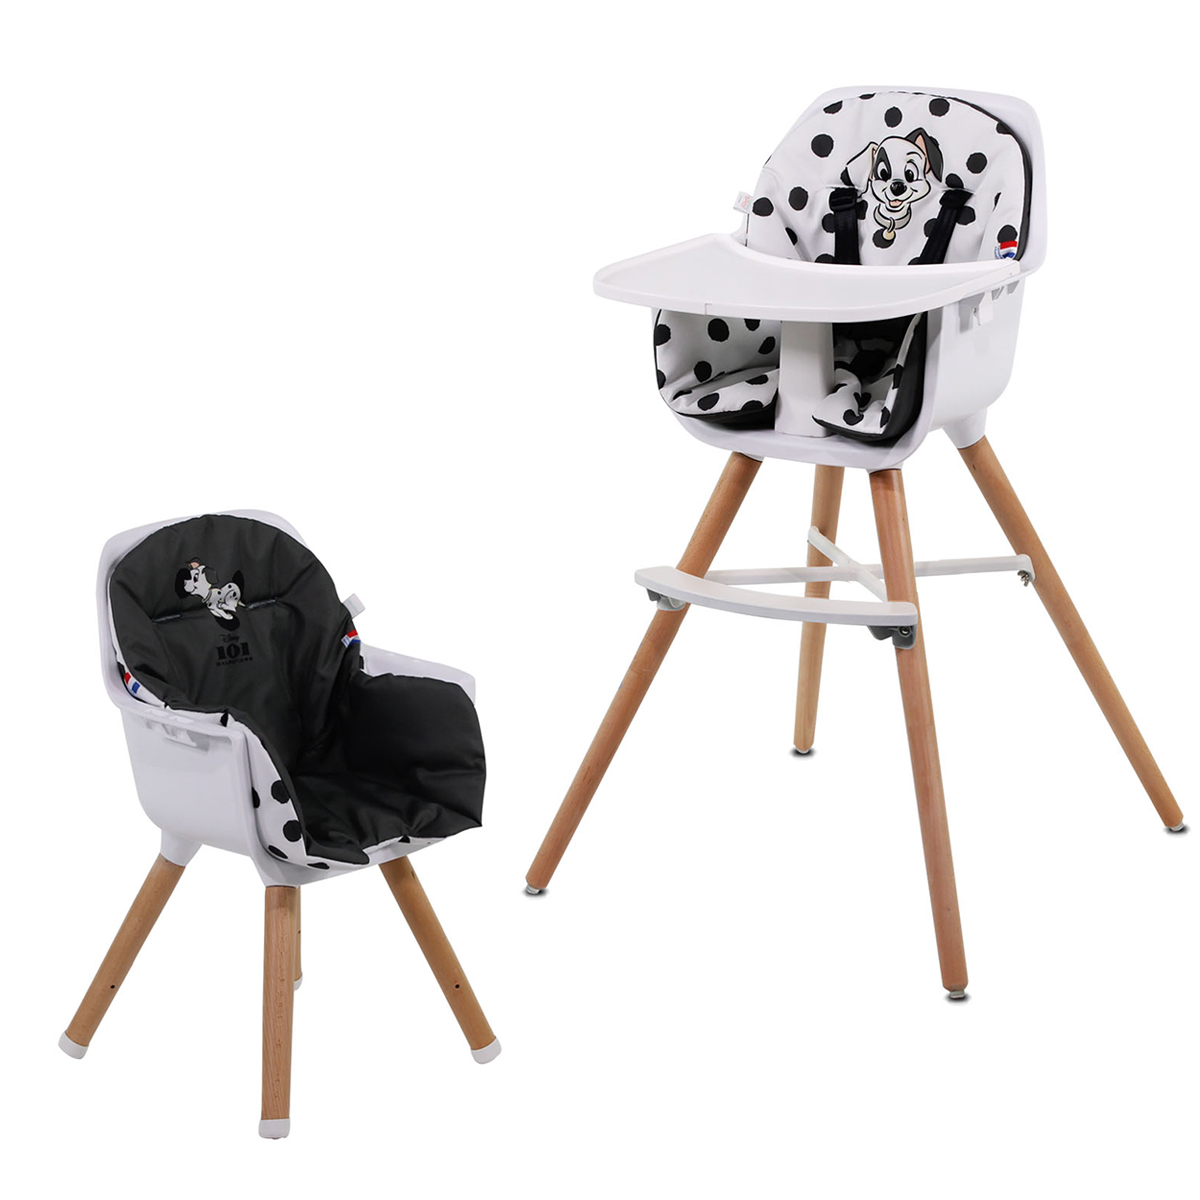 Chaise haute évolutive 2 en 1 Nania Paulette - Fabriquée en France - Disney 101 Dalmatiens